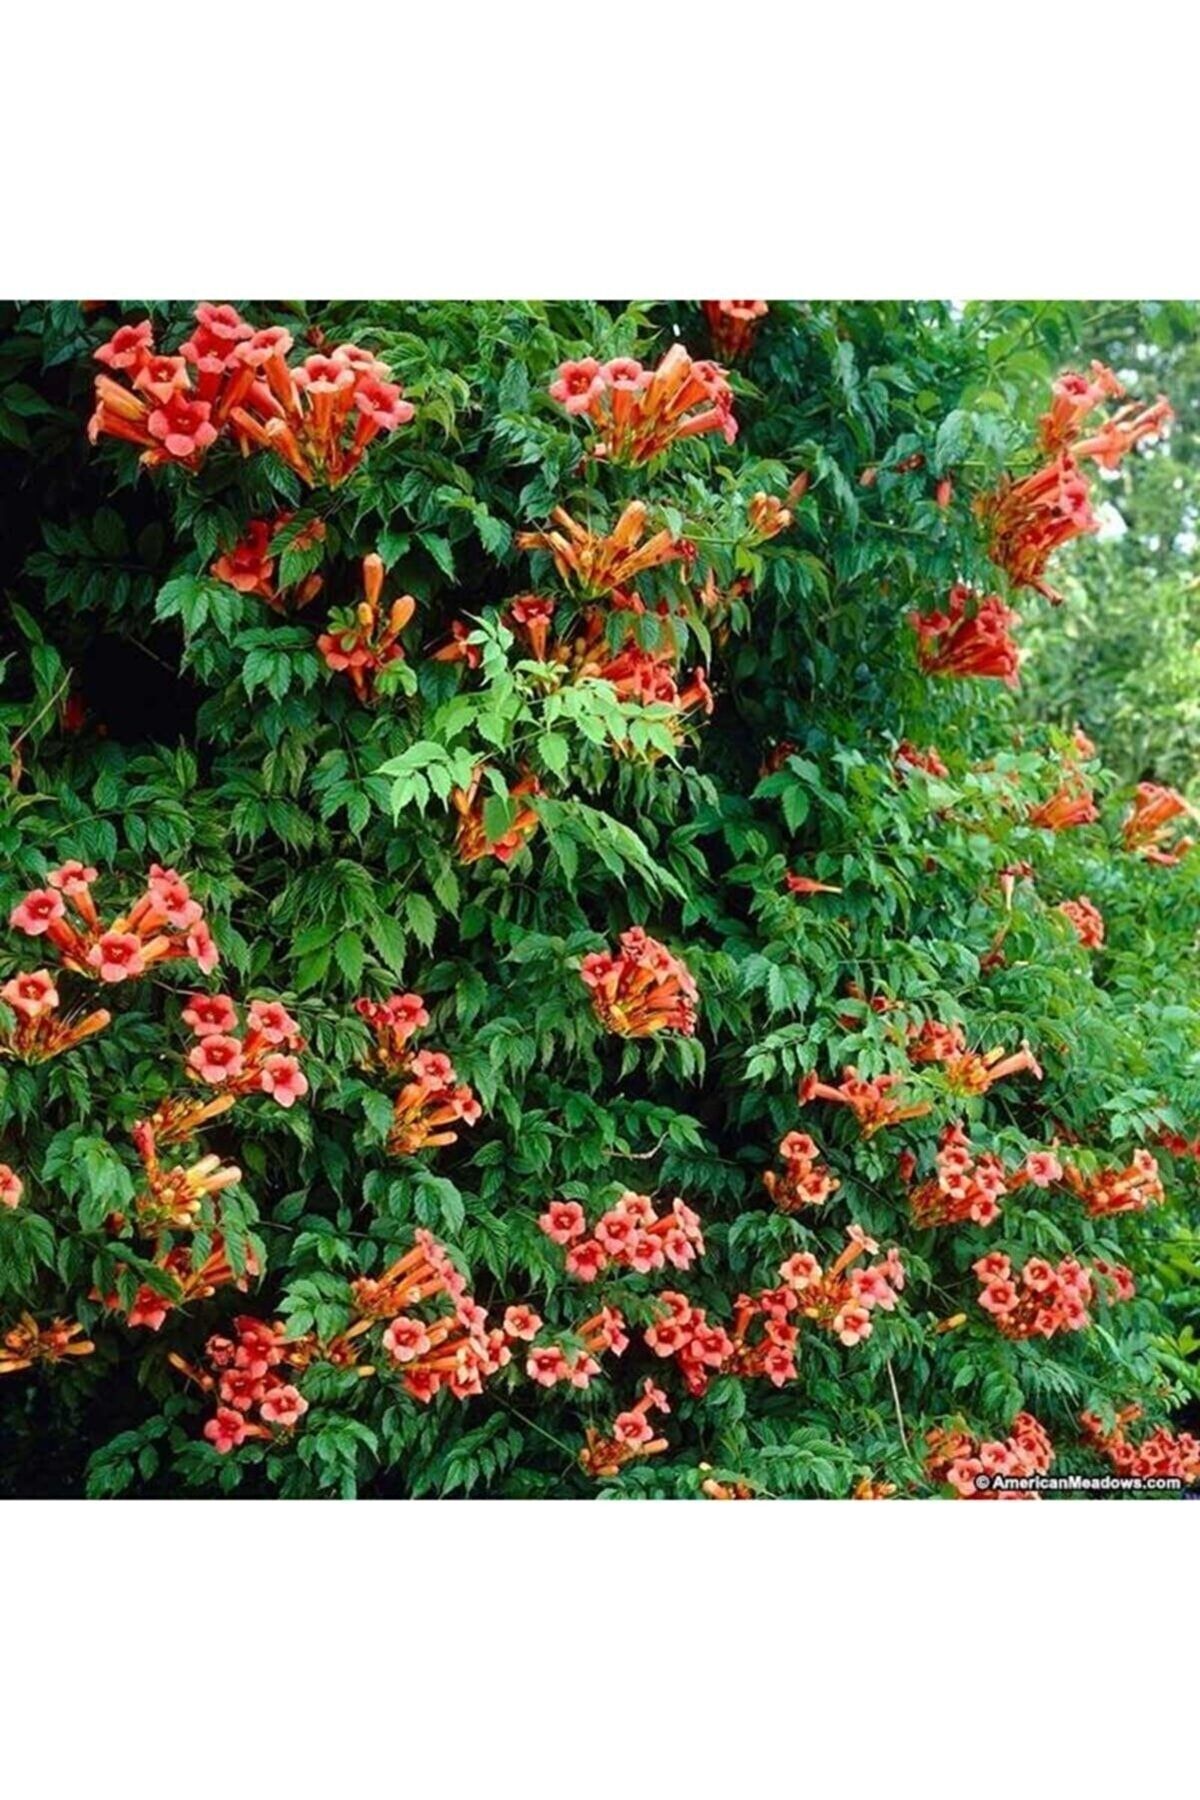 DH STORE Yeşil Yapraklı Turuncu Acem Borusu Çiçeği Fidanı 60- 70- 80 Cm Tüplü Vitaminli